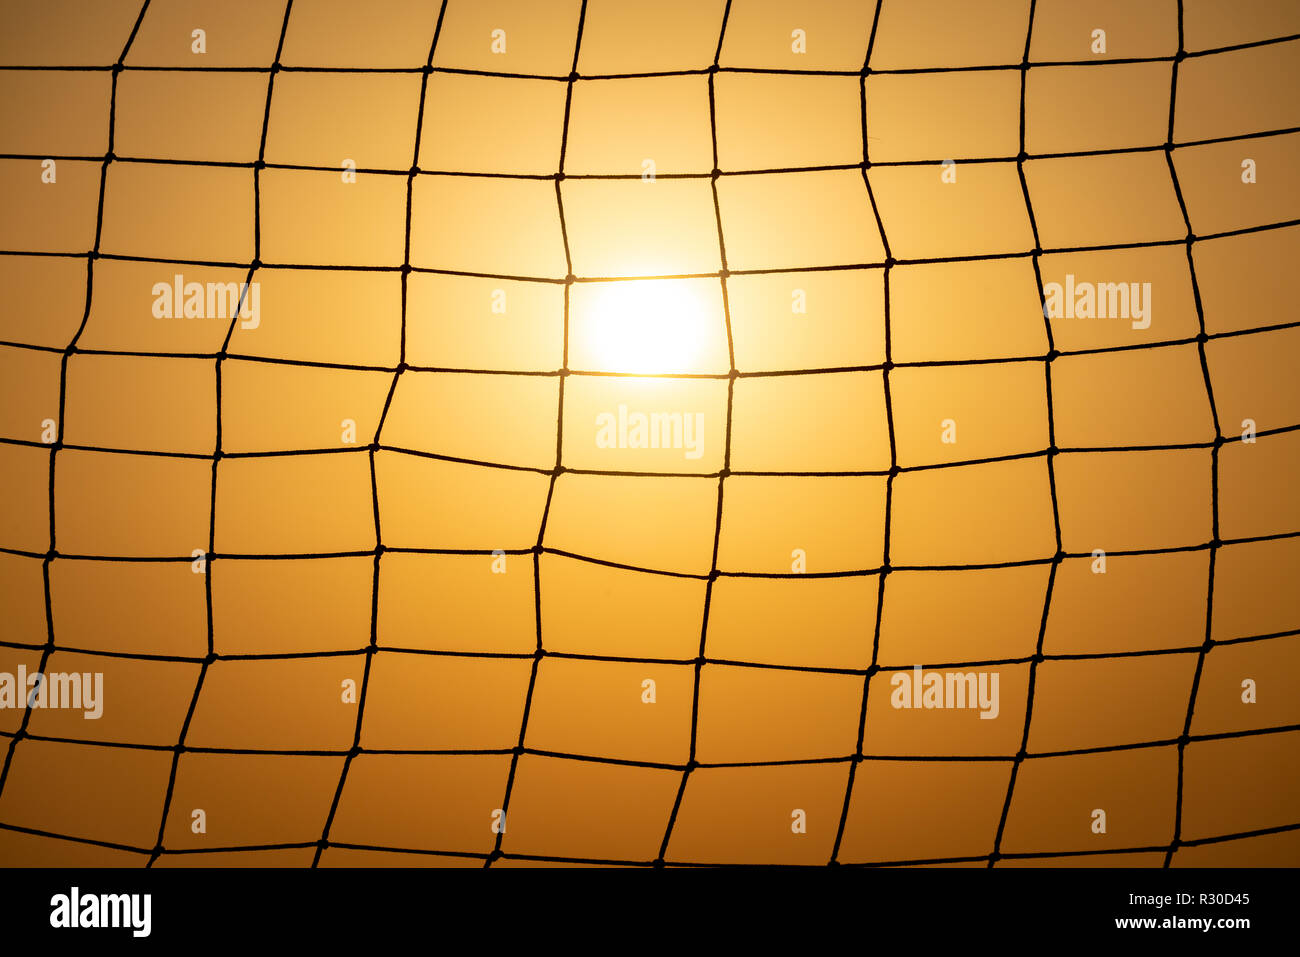 Objetivo de fútbol net al atardecer. Patrón de malla con sun y sunset sky en el fondo. Foto de stock